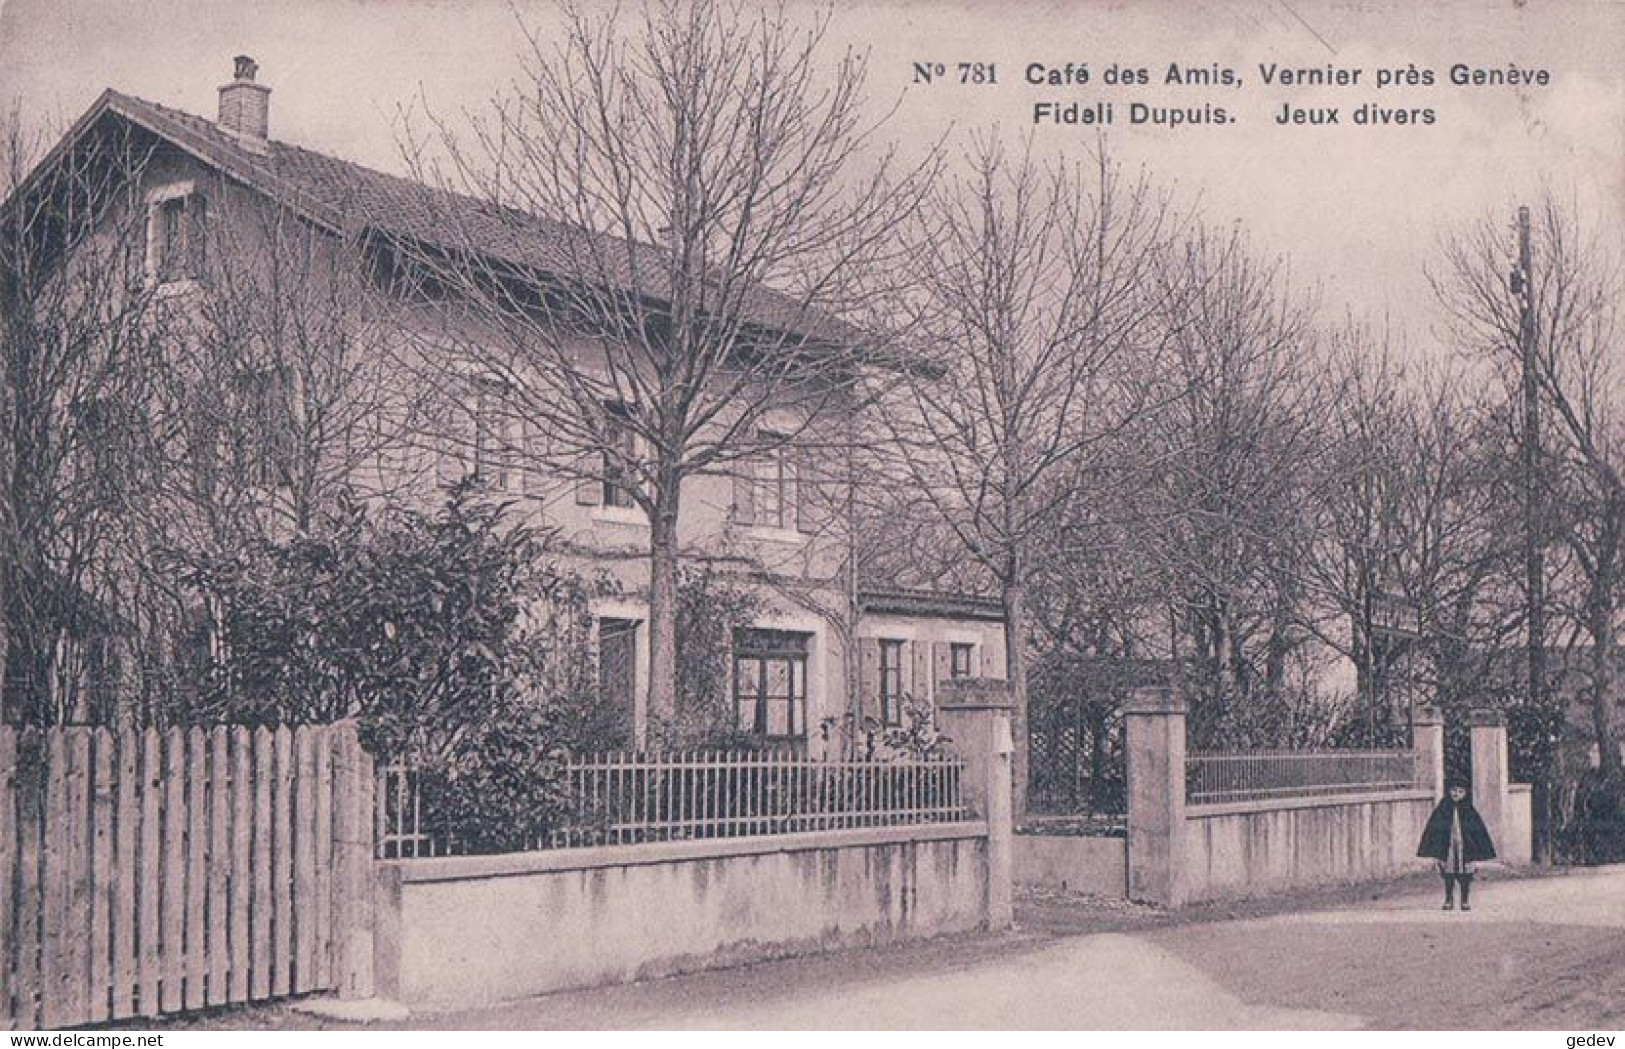 Genève, Vernier, Café Des Amis, Fidali Dupuis, Jeux Divers (781) - Vernier